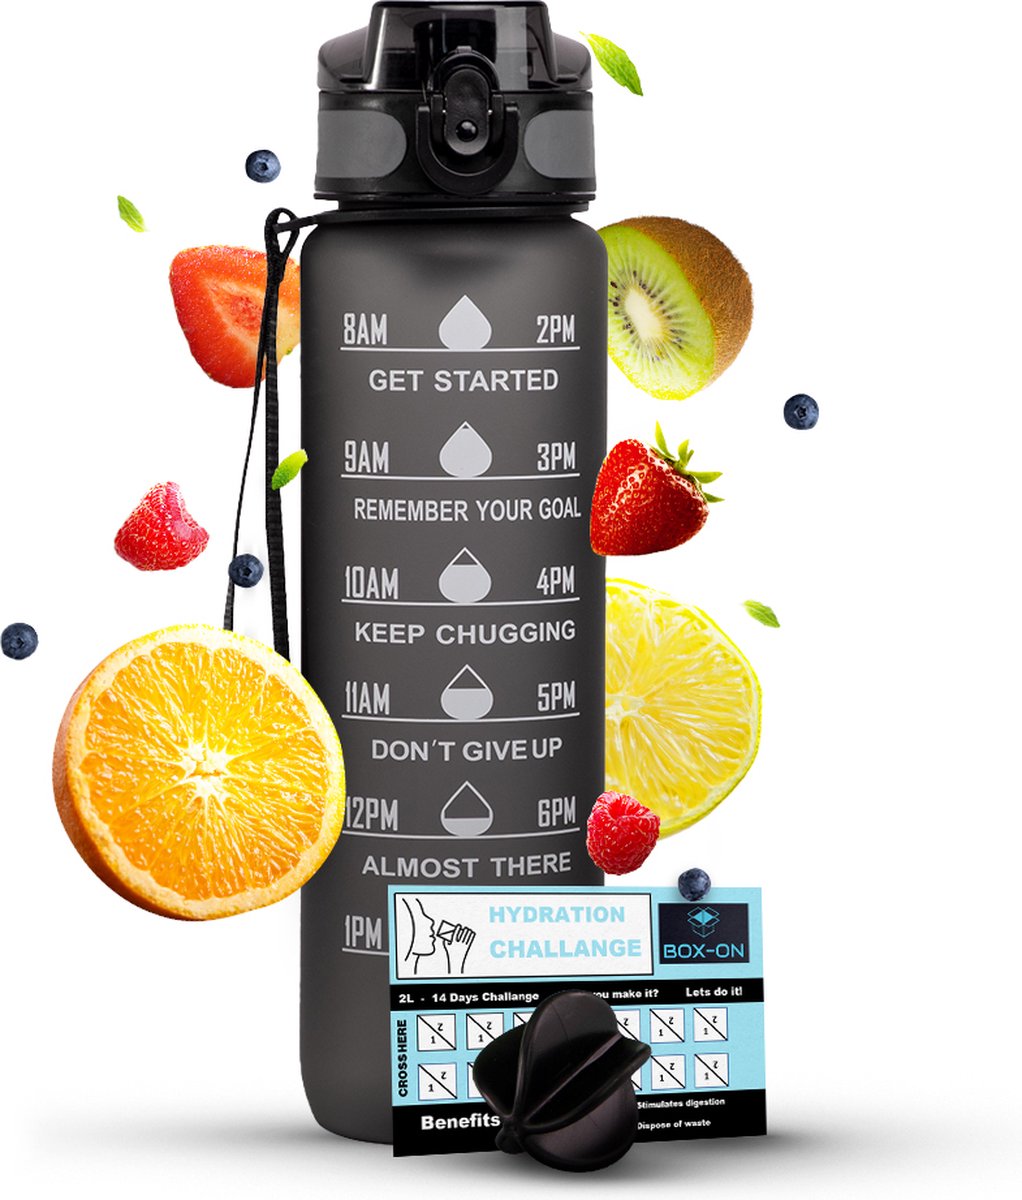 Motivatie Waterfles - Met Fruitfilter - Inclusief Shake Bal - Zwart - 1 Liter Drinkfles - Motivatiefles - Waterfles met tijdmarkering - BPA Vrij - Volwassenen - Kinderen - Met Box-On Hydration Challenge